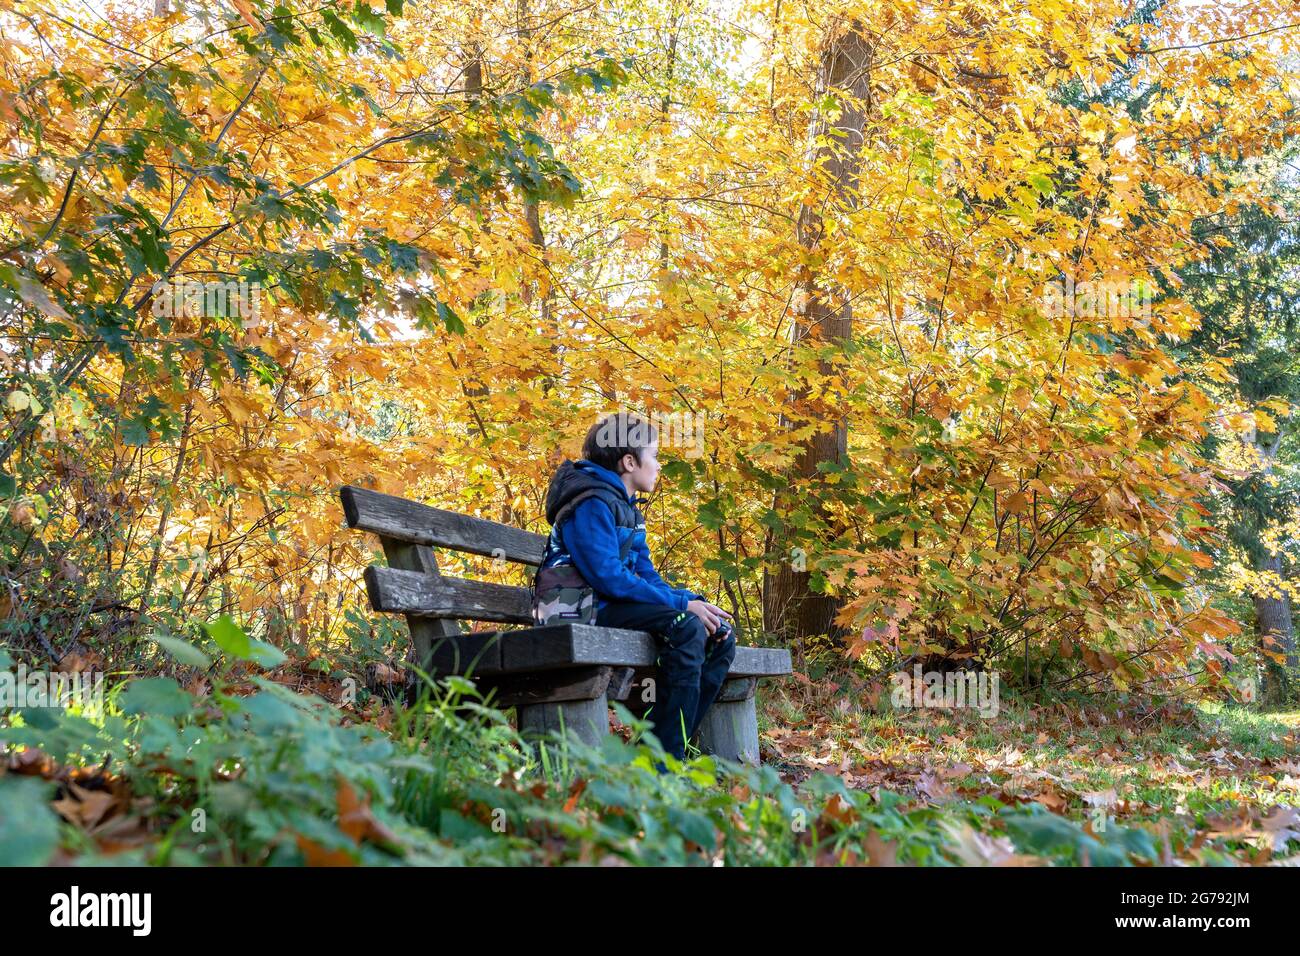 Europa, Deutschland, Baden-Württemberg, Stuttgart, Junge sitzt auf einer Bank im bunten Herbstwald Stockfoto